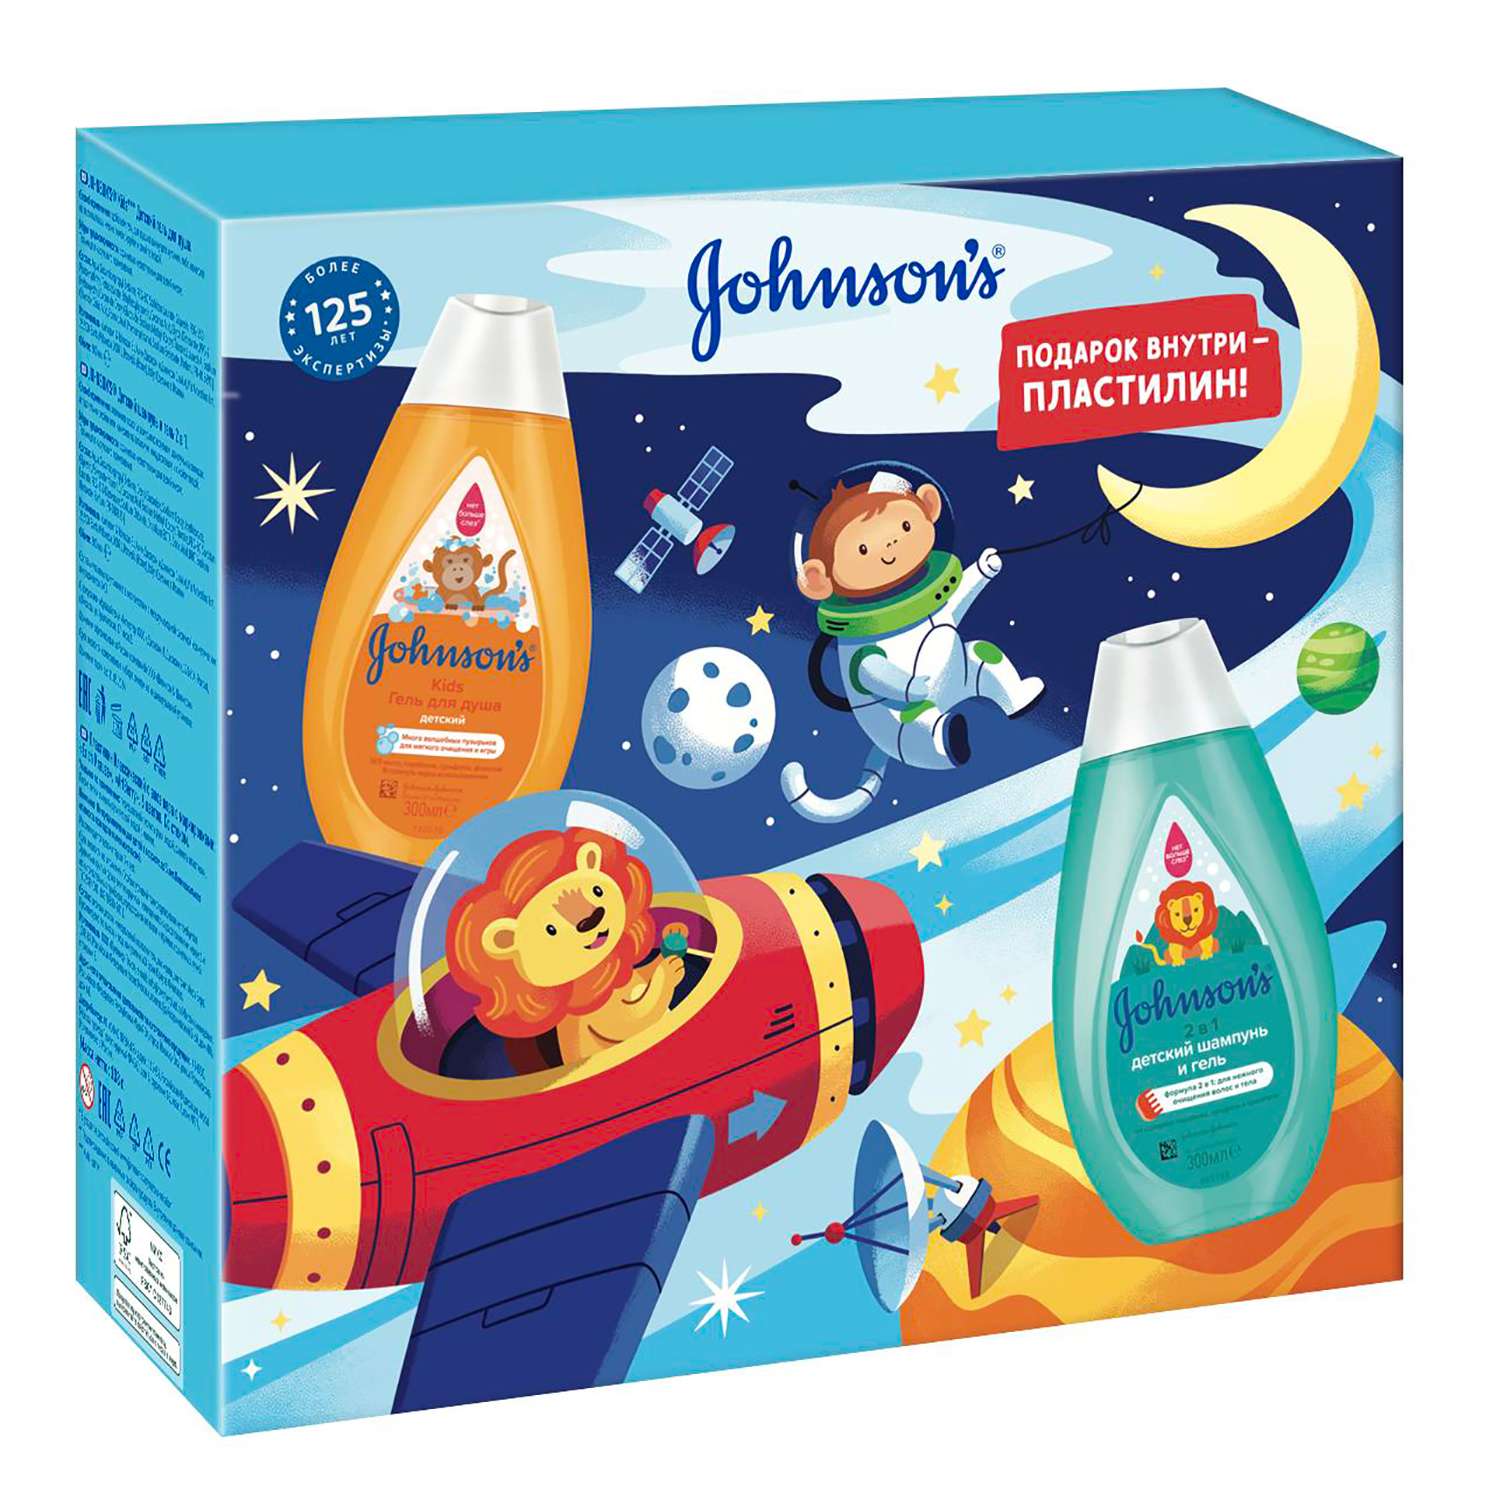 Набор подарочный Johnson's Шампунь-гель детский 300мл + Гель для душа детский 300мл + Пластилин 45499 - фото 1